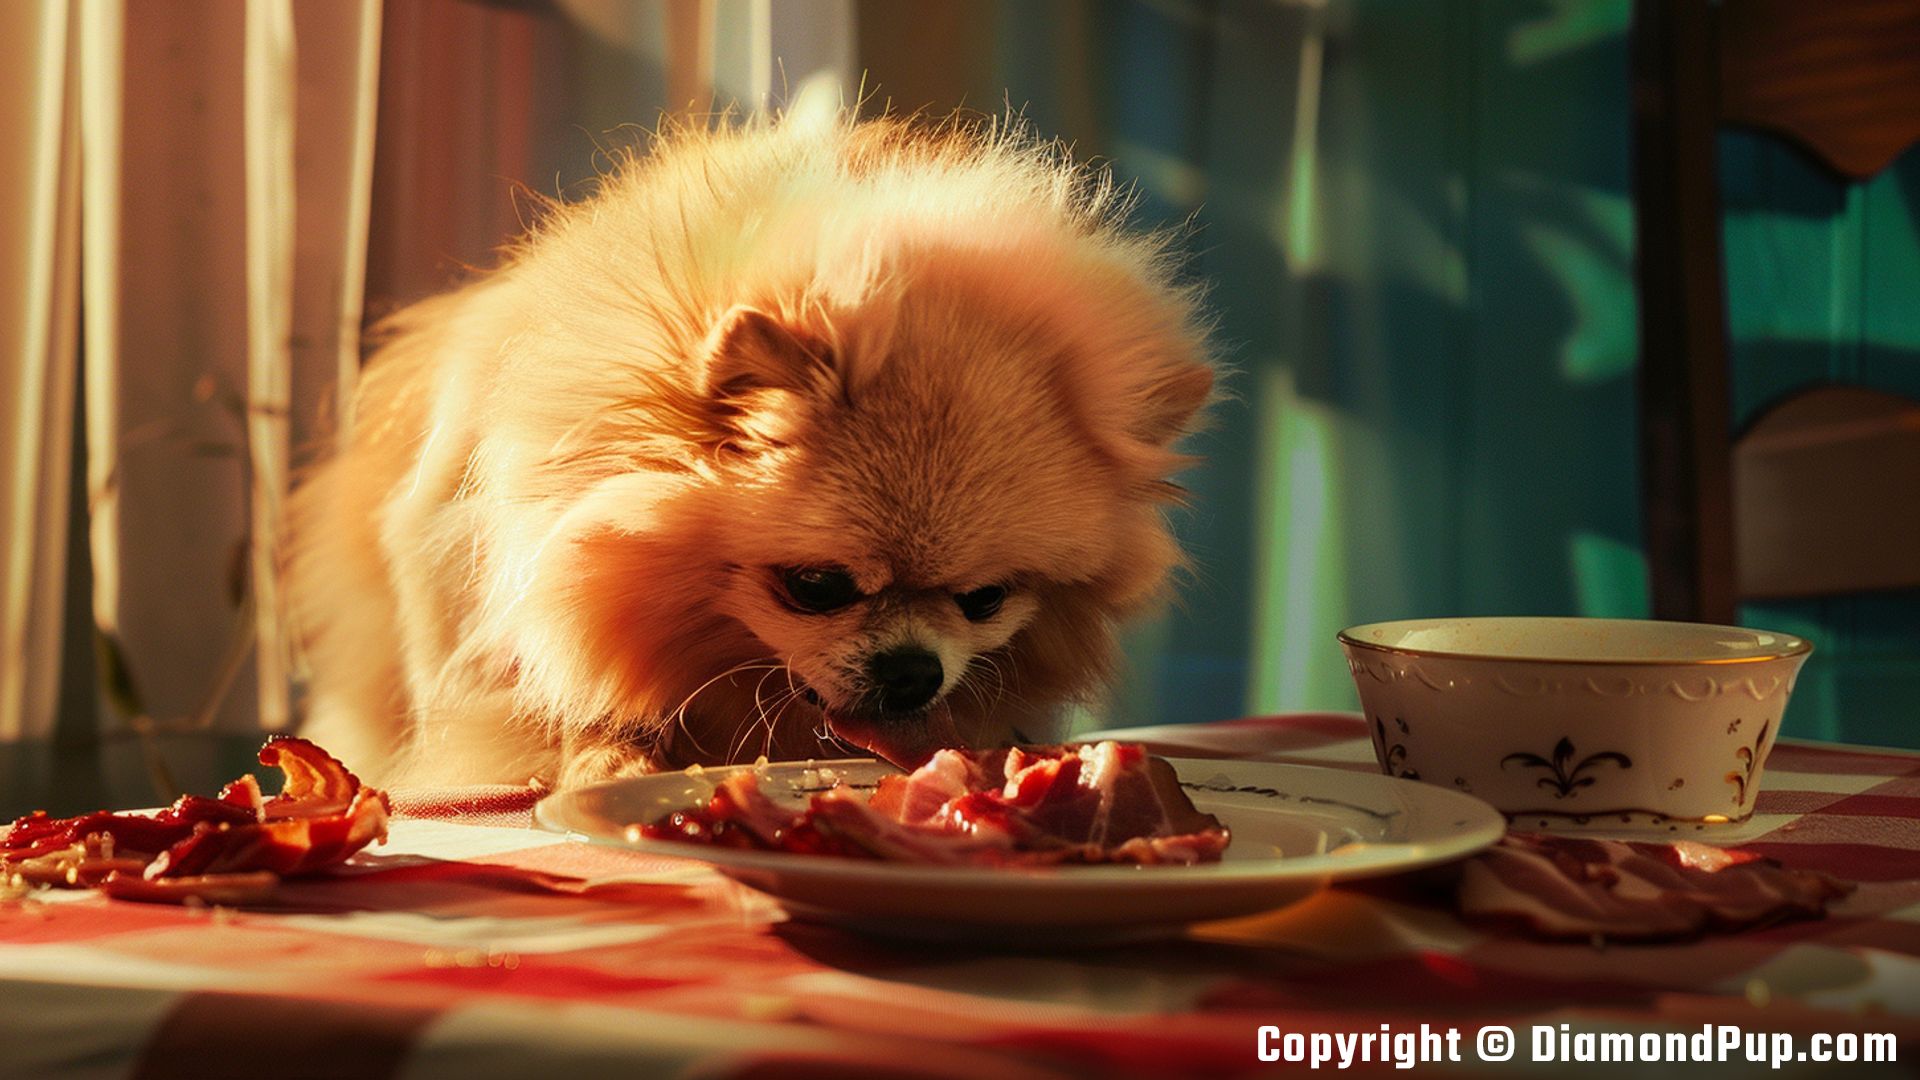 Photograph of an Adorable Pomeranian Eating Bacon